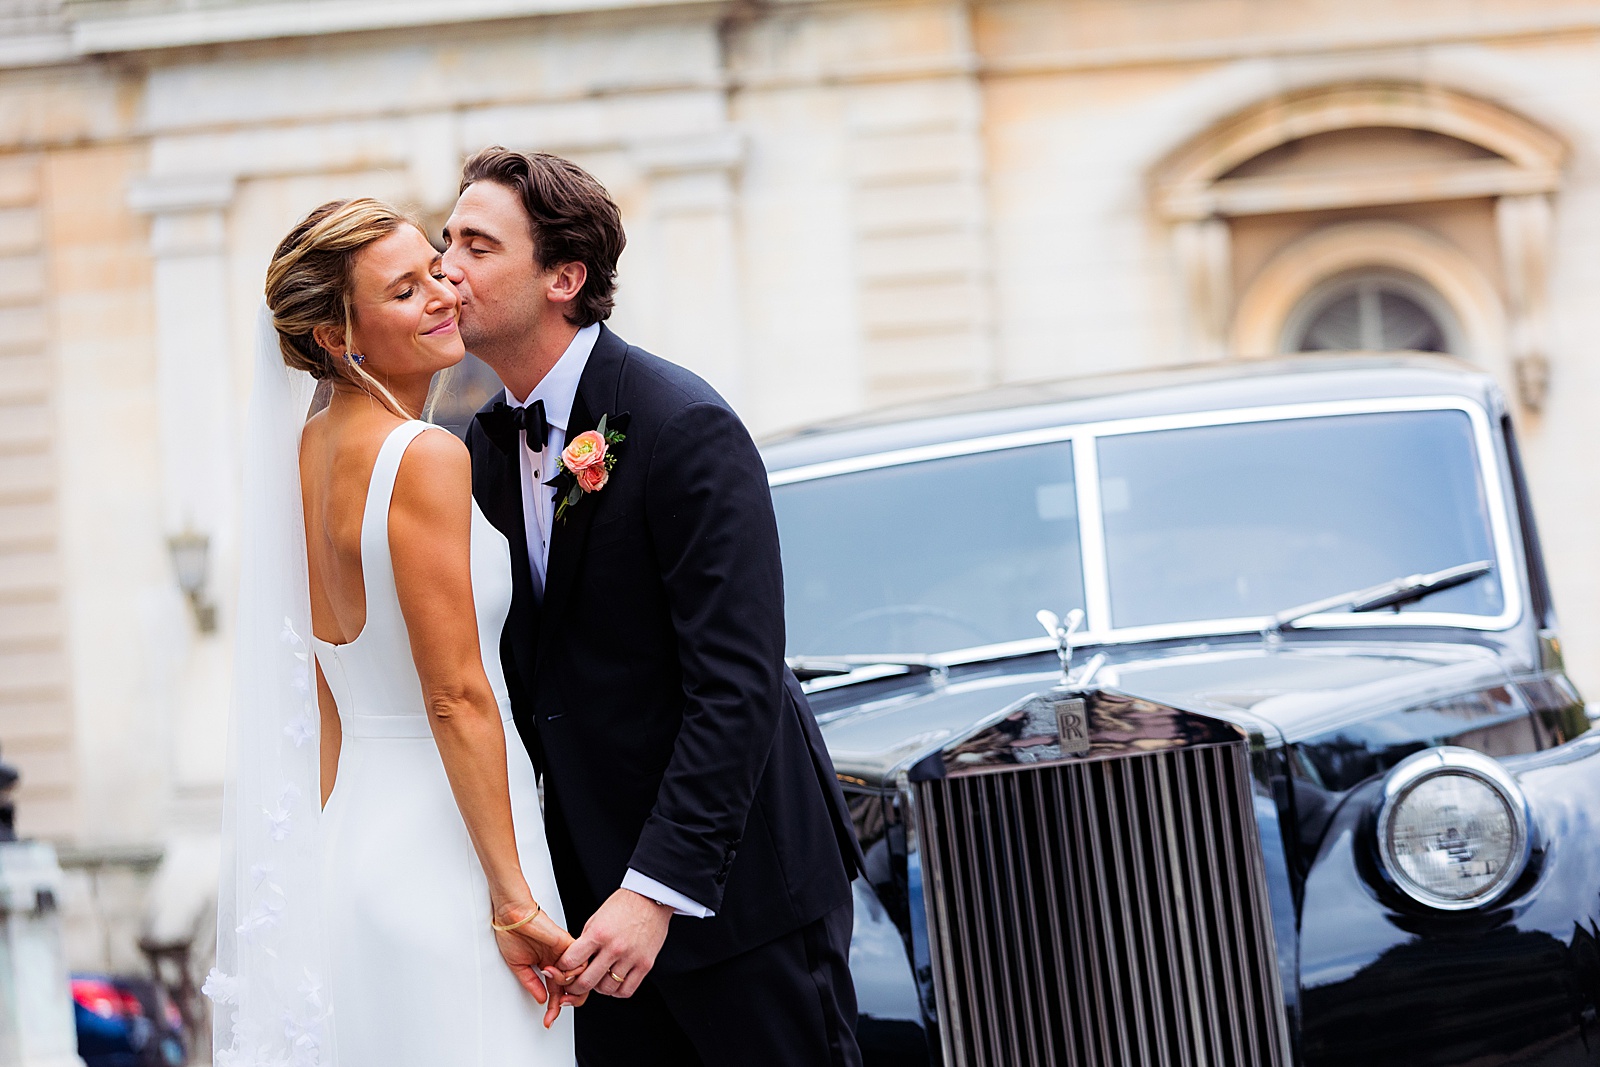 Groom kisses bride's cheek by vintage Rolls Royce